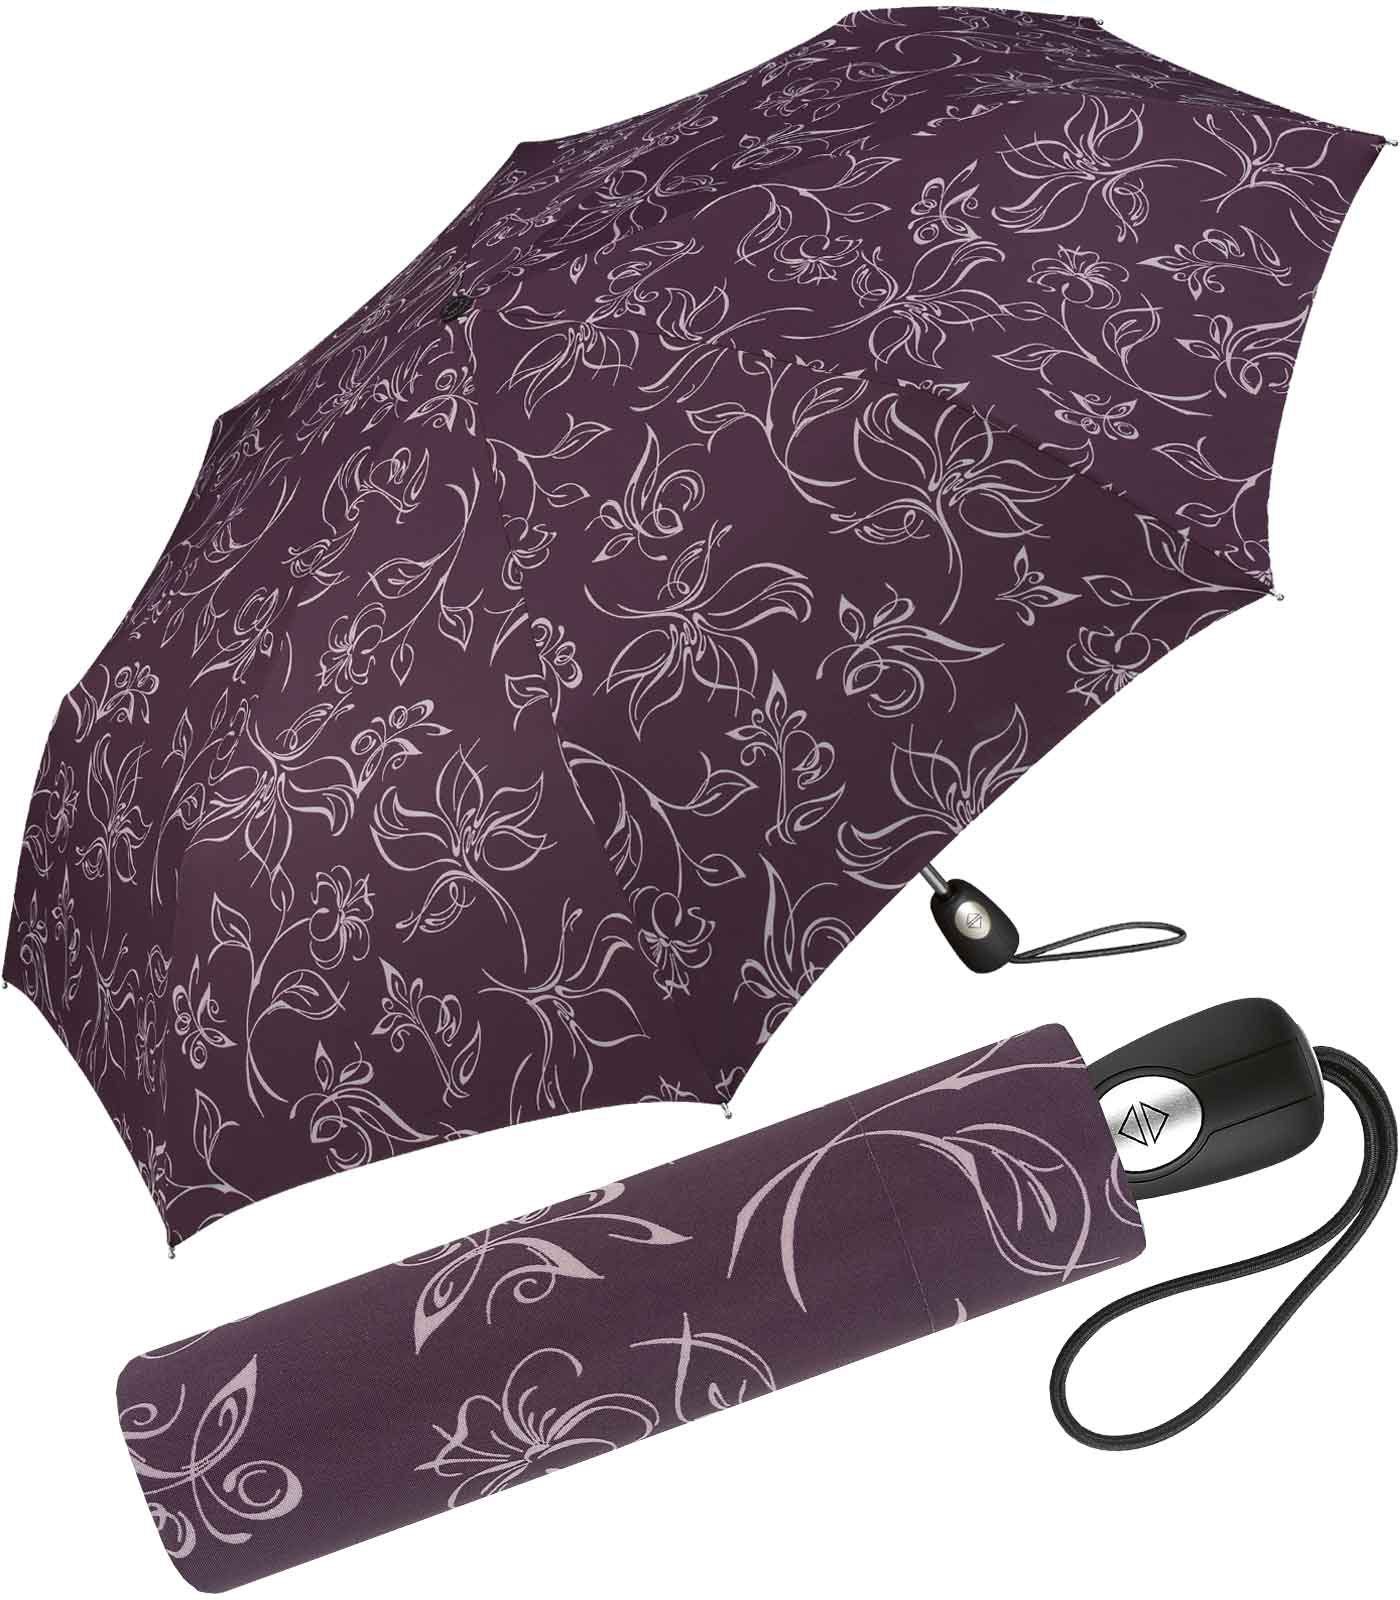 Pierre Cardin Taschenregenschirm weiß-bordeauxrot schöner mit Blumenskizzen wunderschönen Auf-Zu-Automatik, Damen-Regenschirm mit